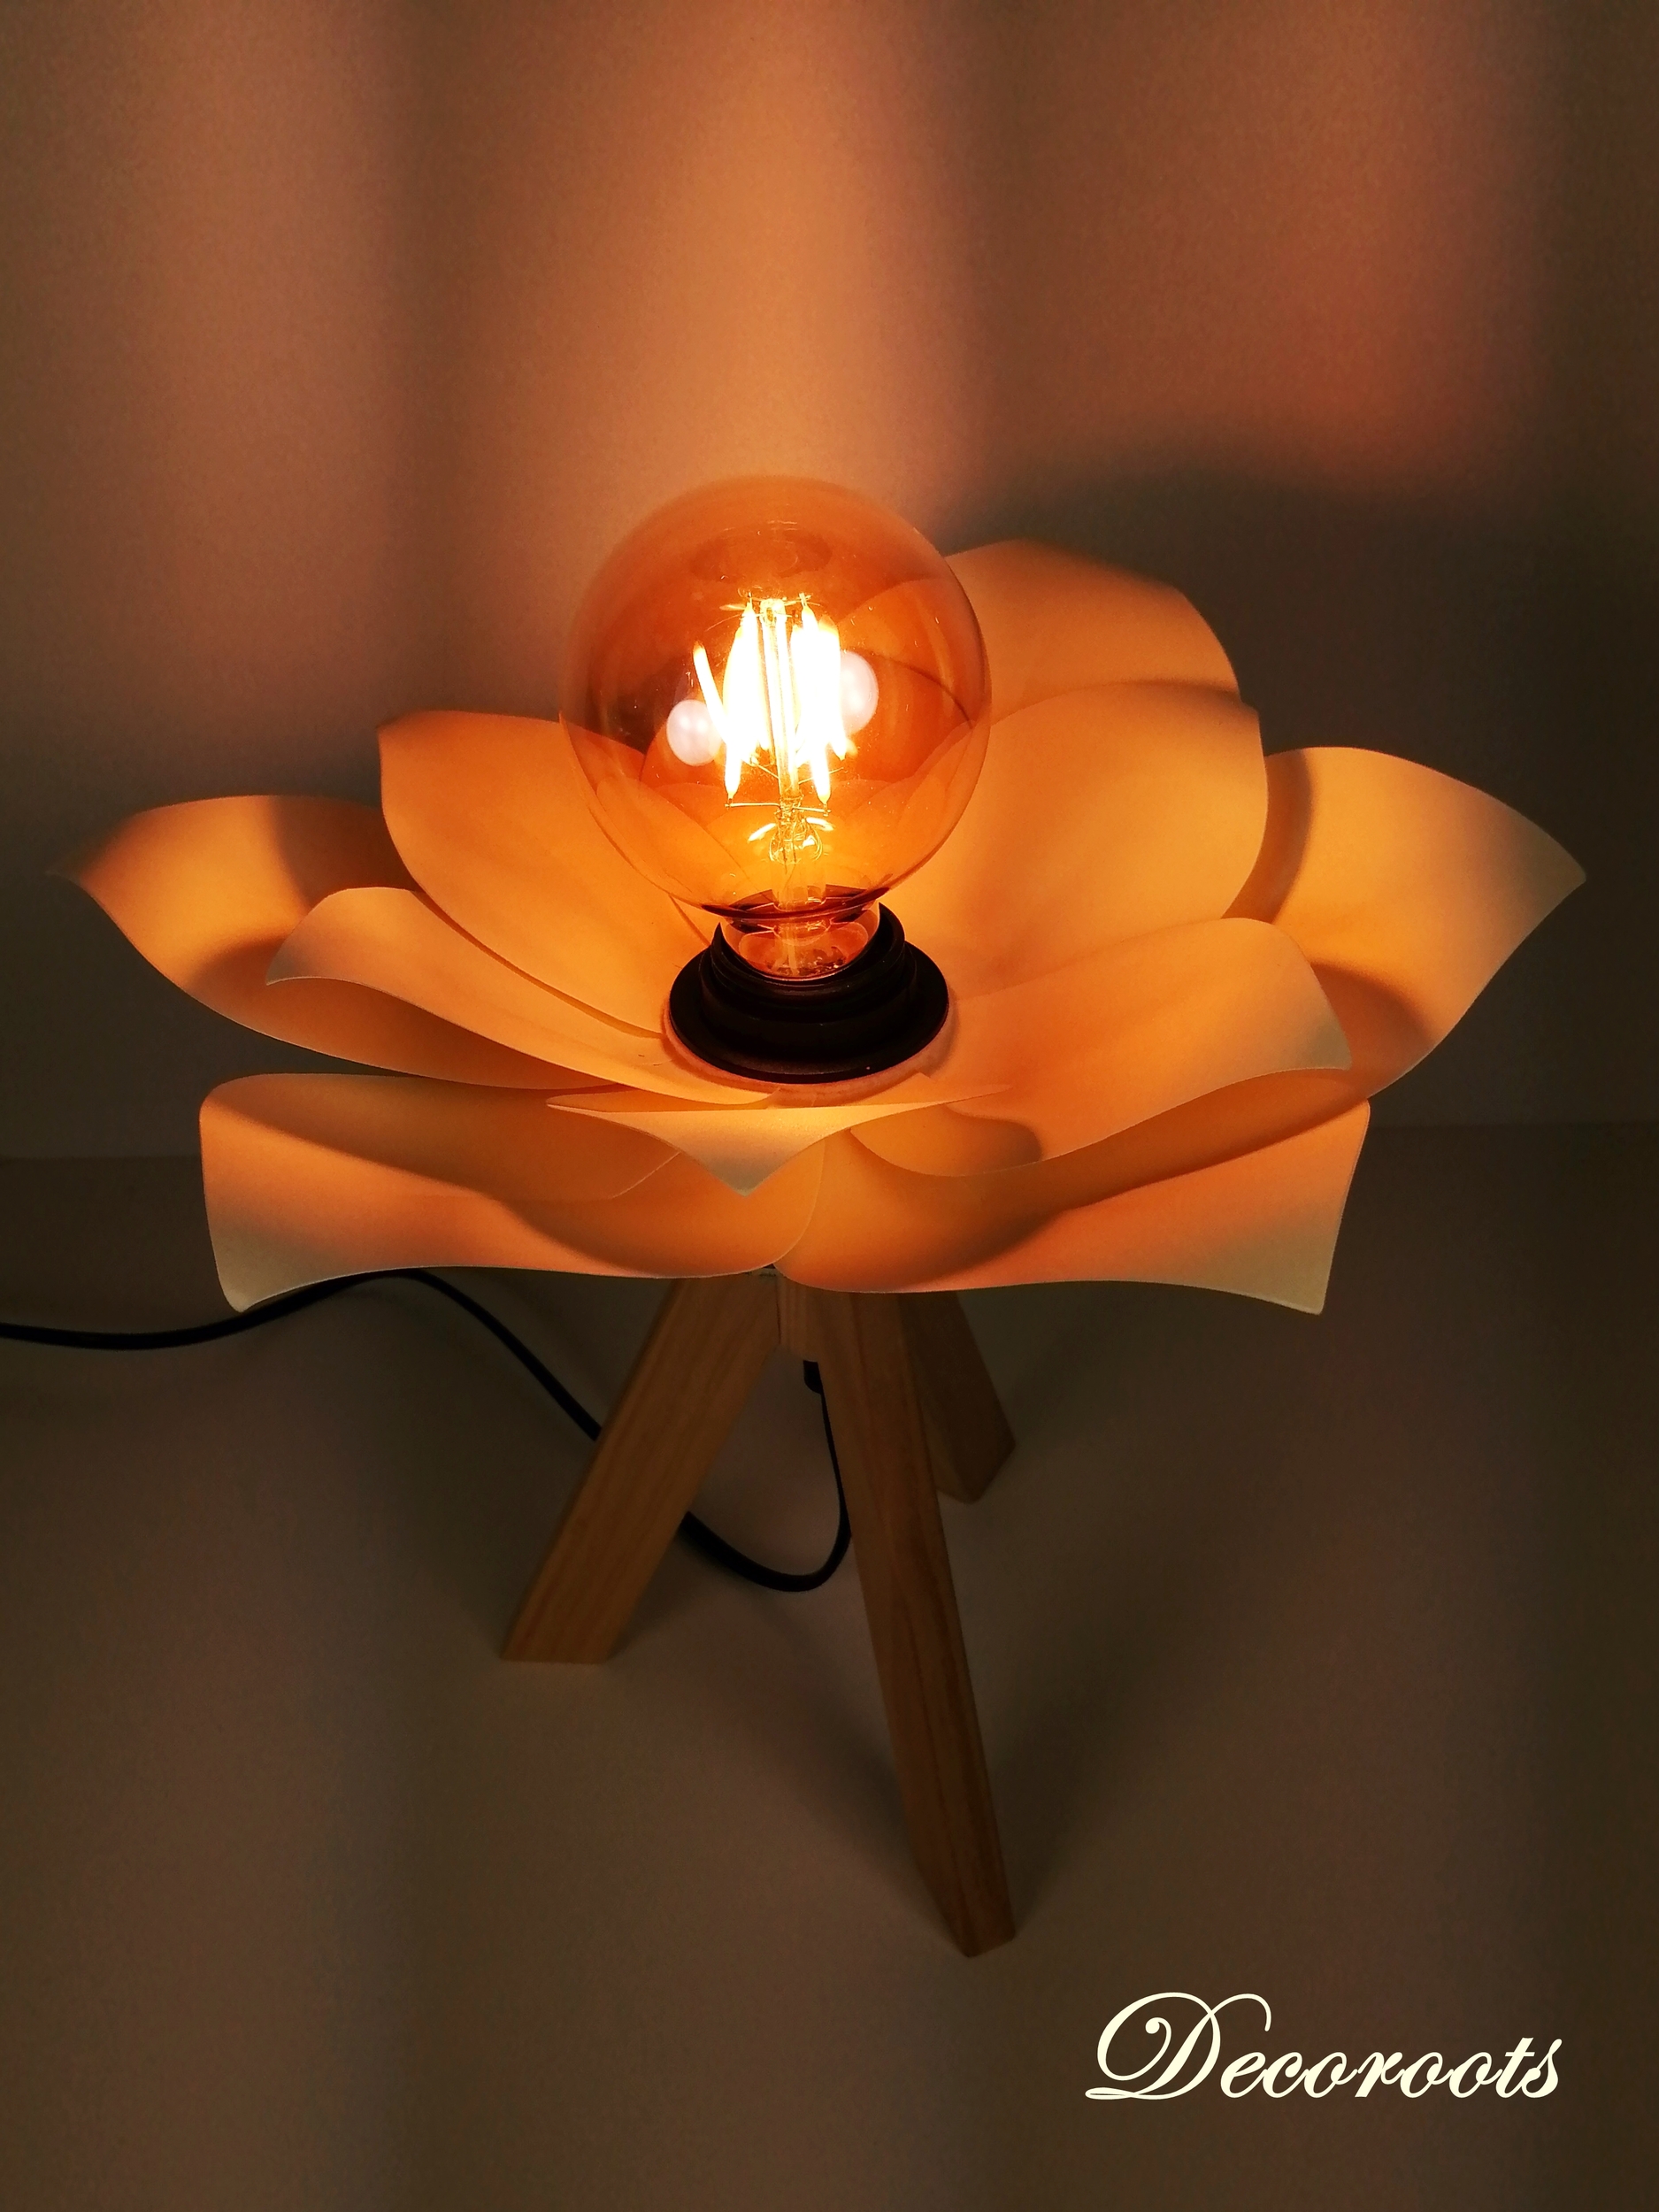 lampe chevet design fleur nenuphar origami beige ivoire papier enfant bébé japonaise 72